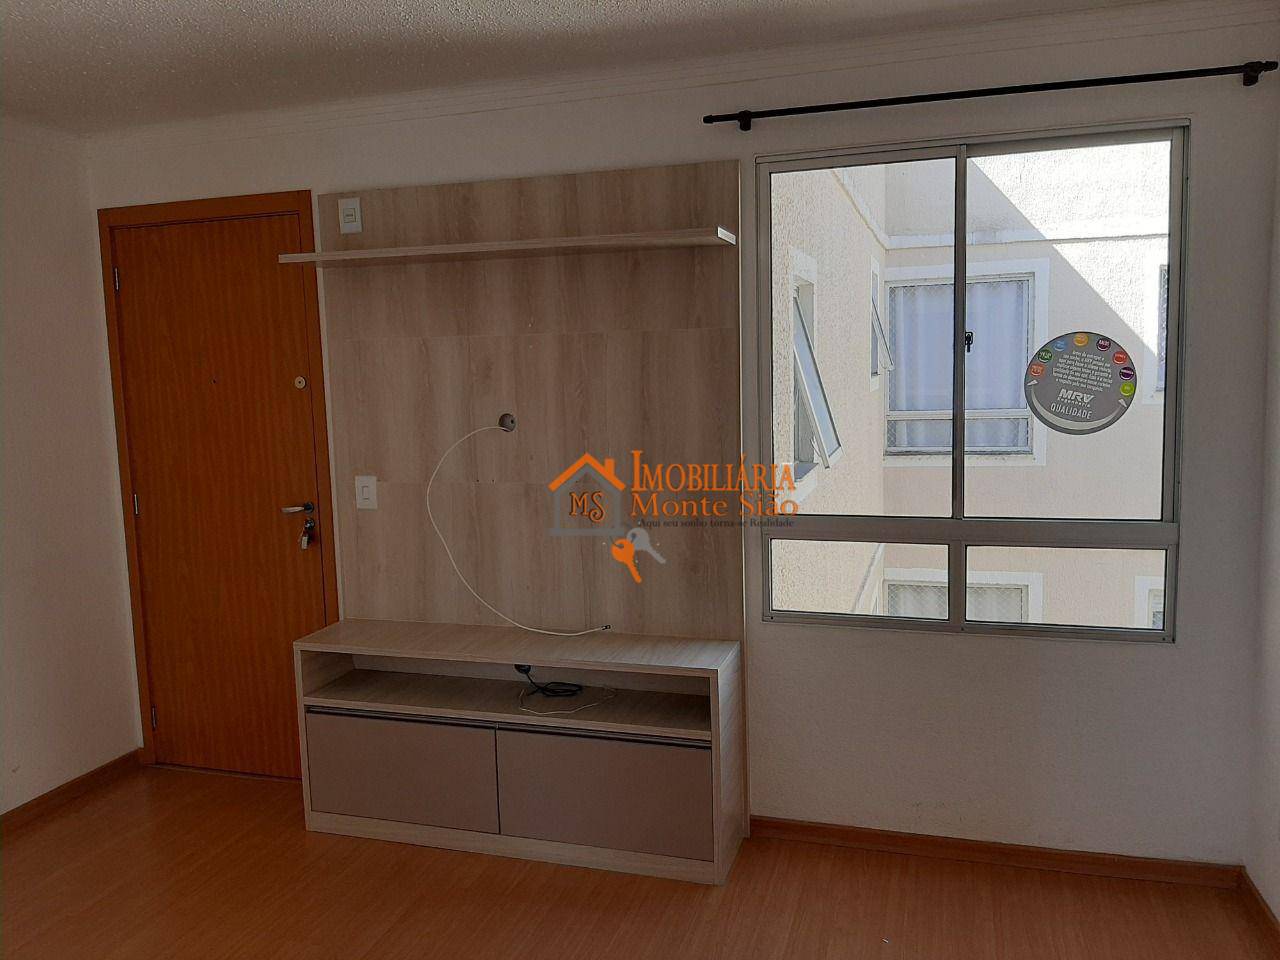 Apartamento com 2 dormitórios para alugar, 44 m² por R$ 1.200,00/mês - Água Chata - Guarulhos/SP